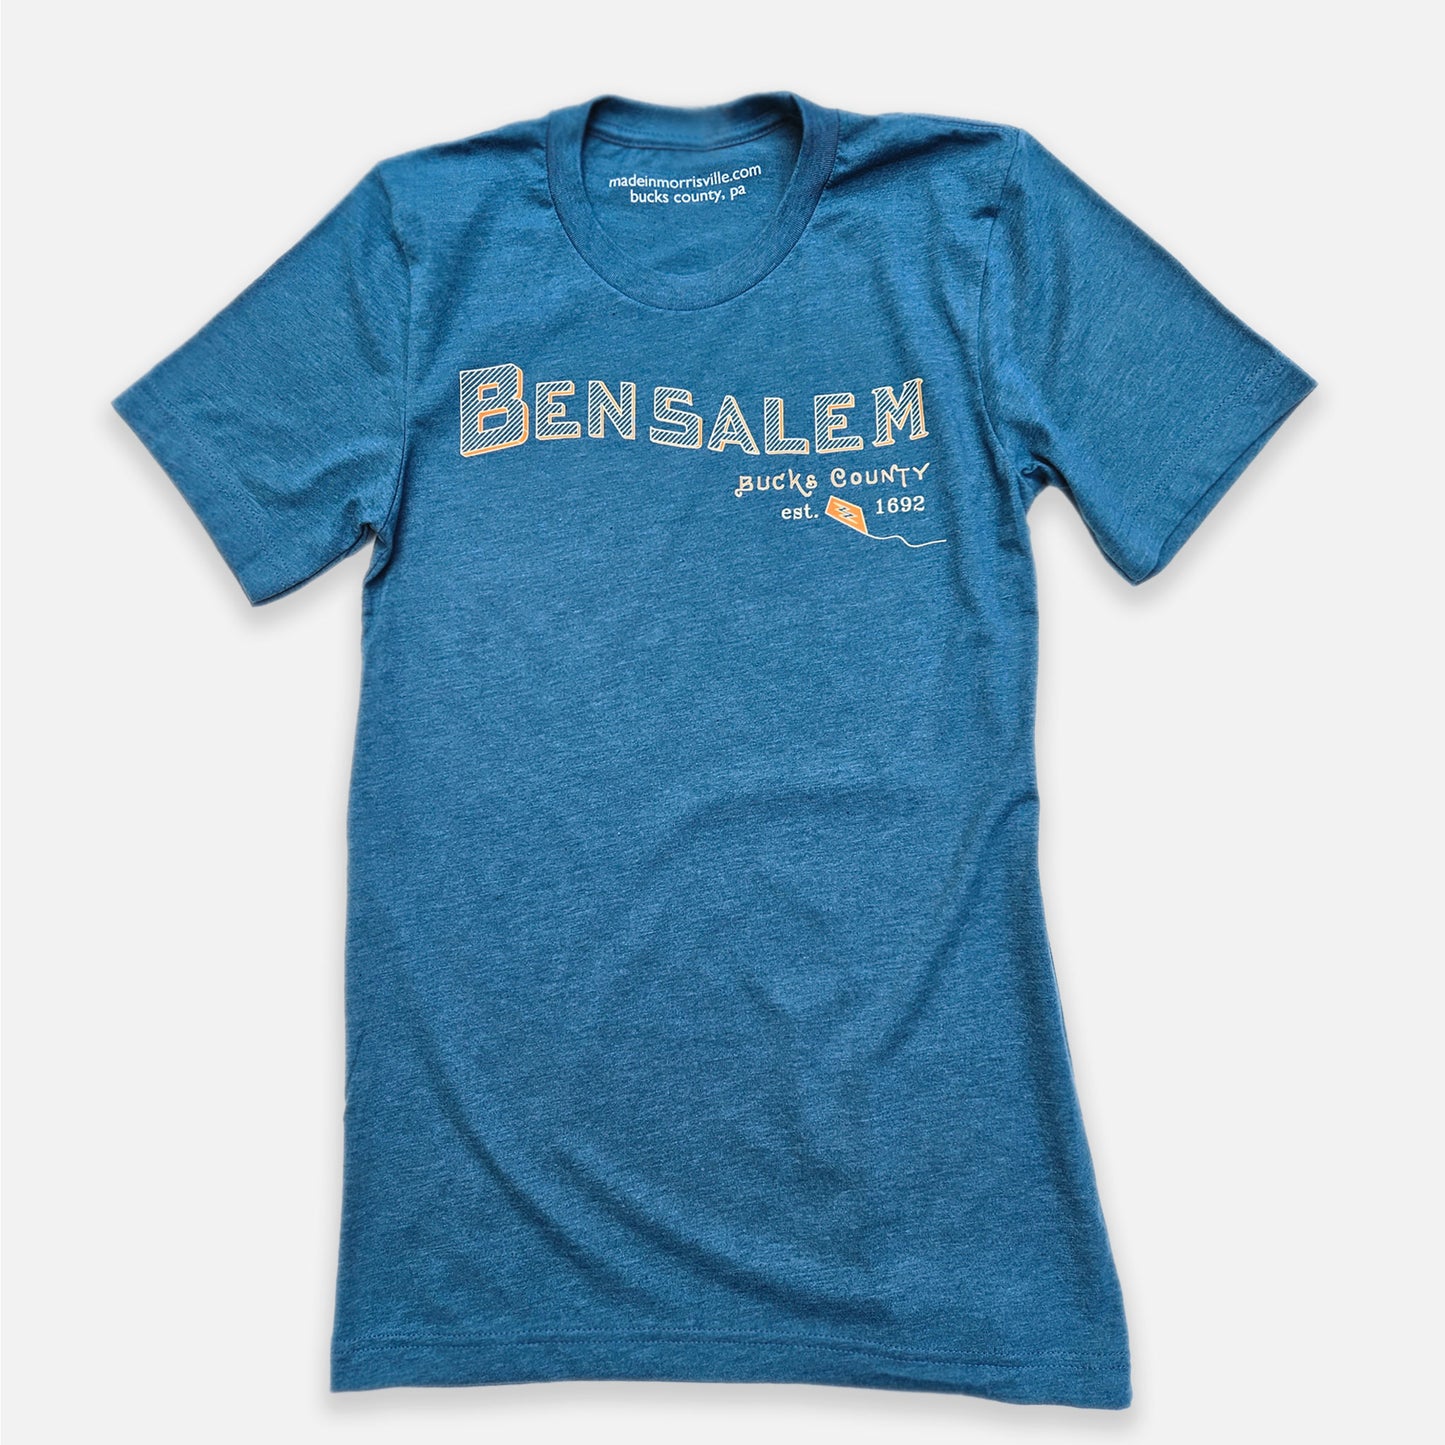 Bensalem graphic t-shirt - heather deep teal